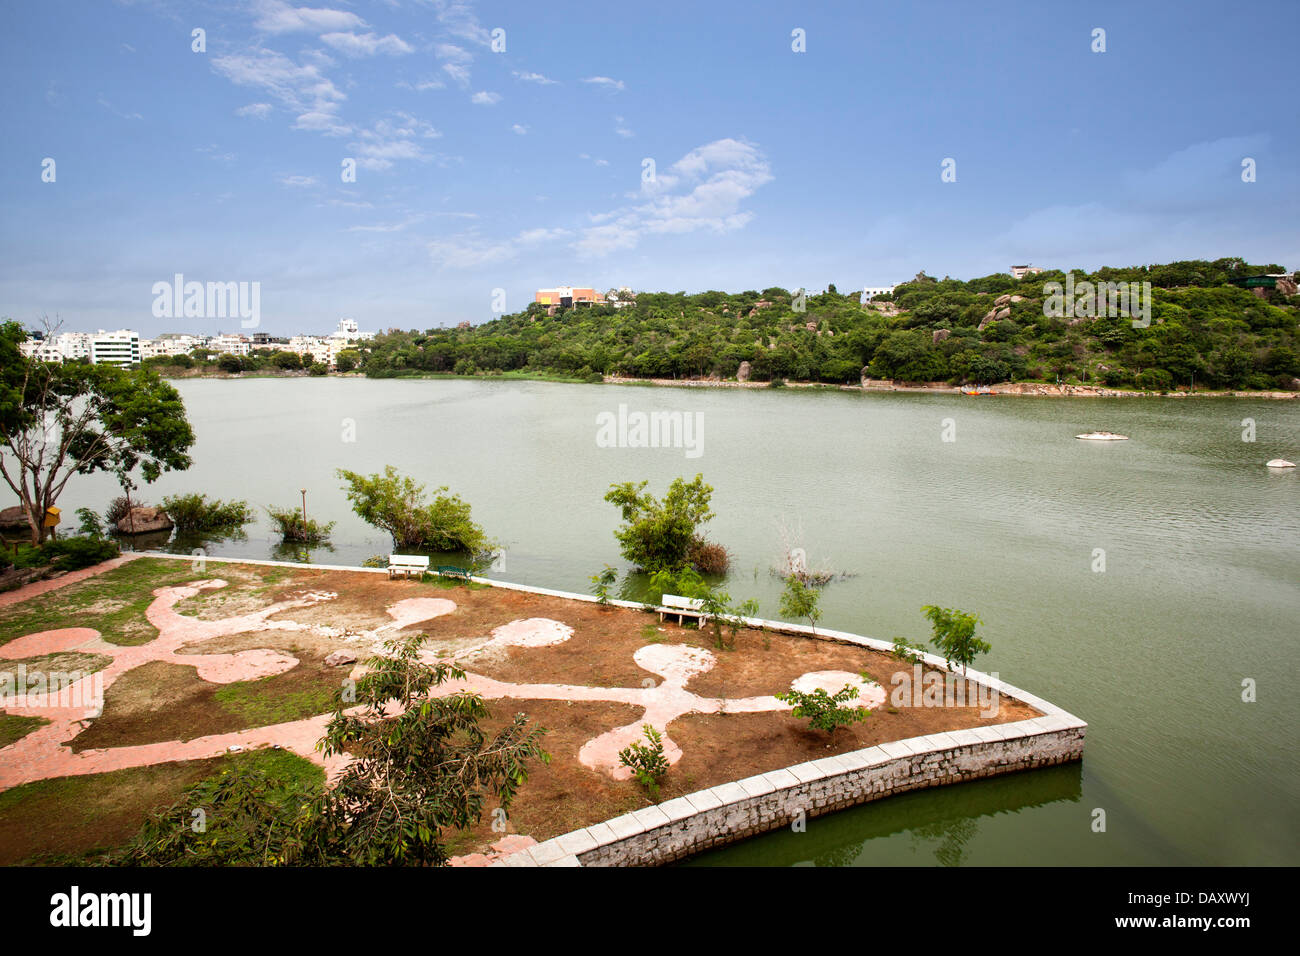 Lake avec des collines en arrière-plan, lac Durgam Cheruvu, Rangareddy, Andhra Pradesh, Inde Banque D'Images